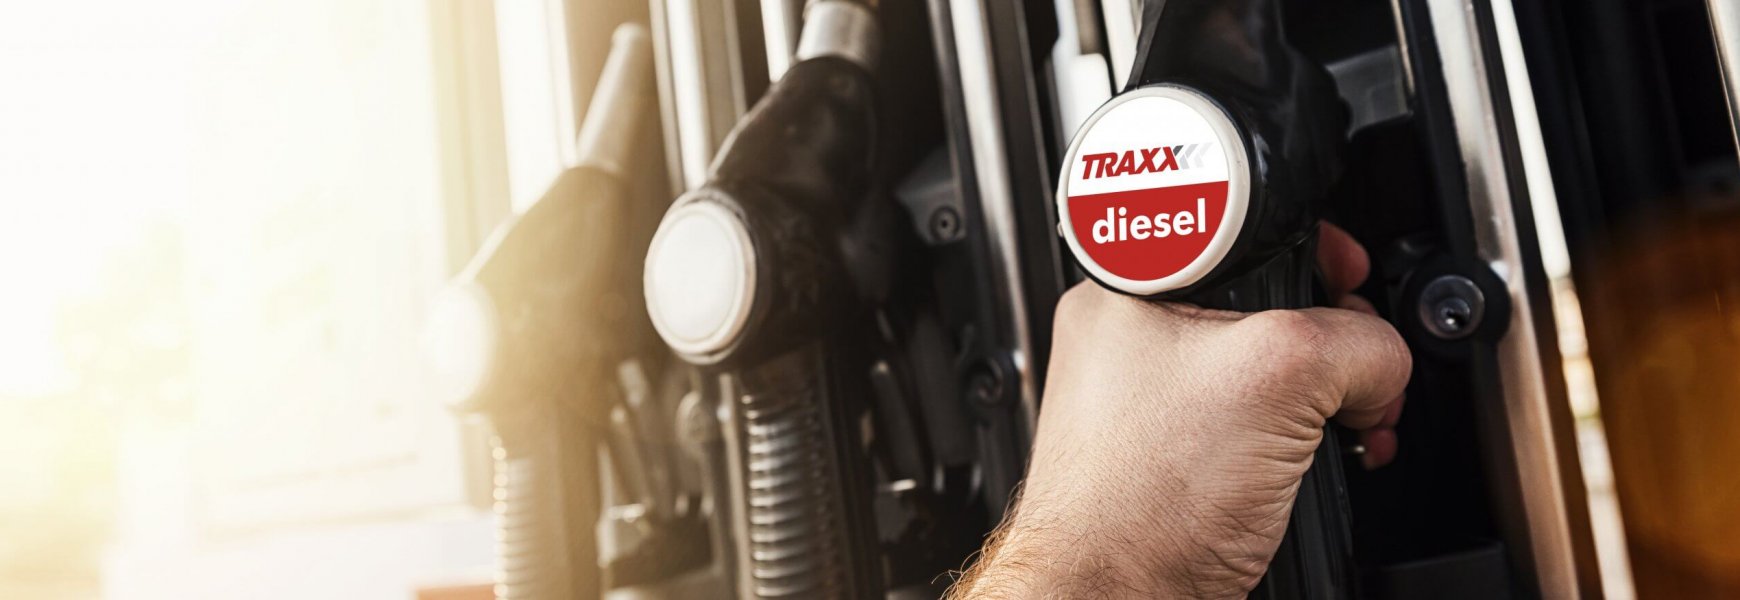 TRAXX_diesel-banner